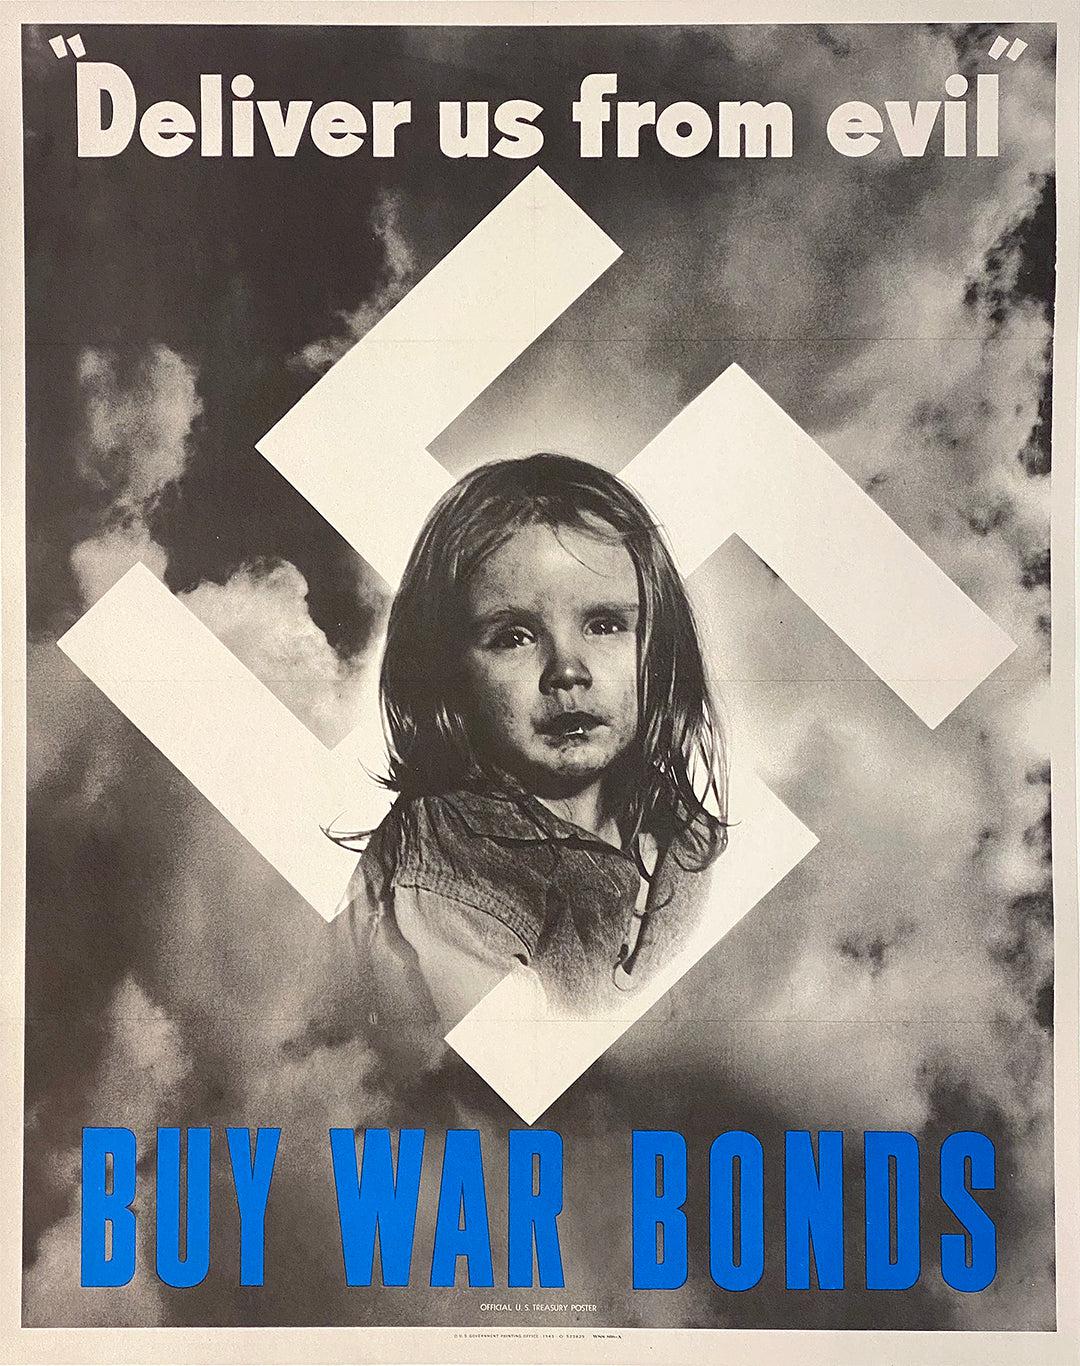 Original Vintage WWII Deliver Us from Evil Poster Buy War Bonds